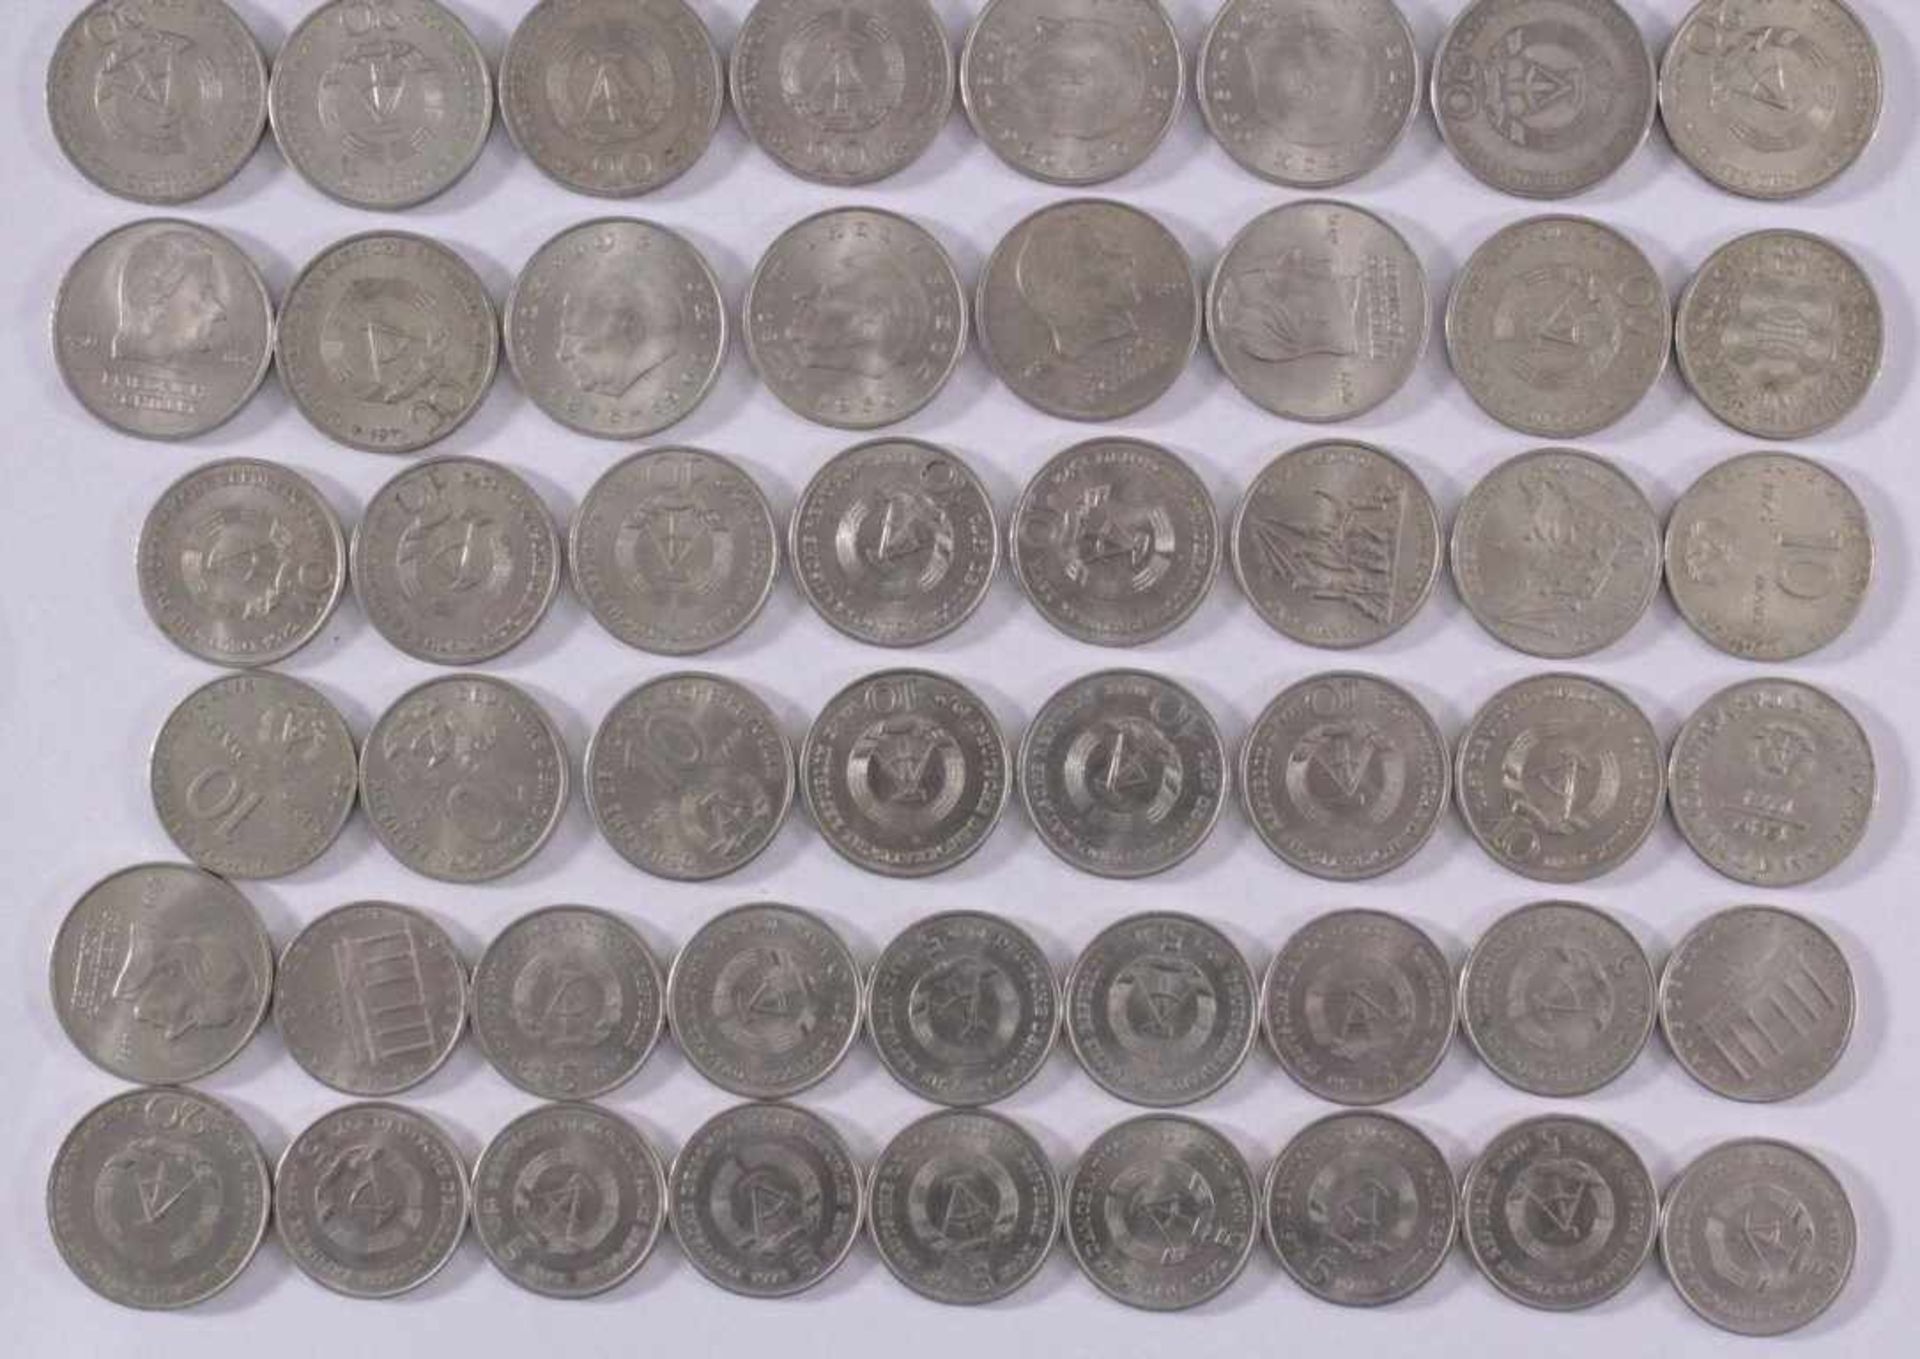 Münzen der DDRkleine Sammlung 5 Mark, 10 Mark und 20 Mark Münzen der DDR.zwei 10 Mark Scheine.15x - Image 3 of 3